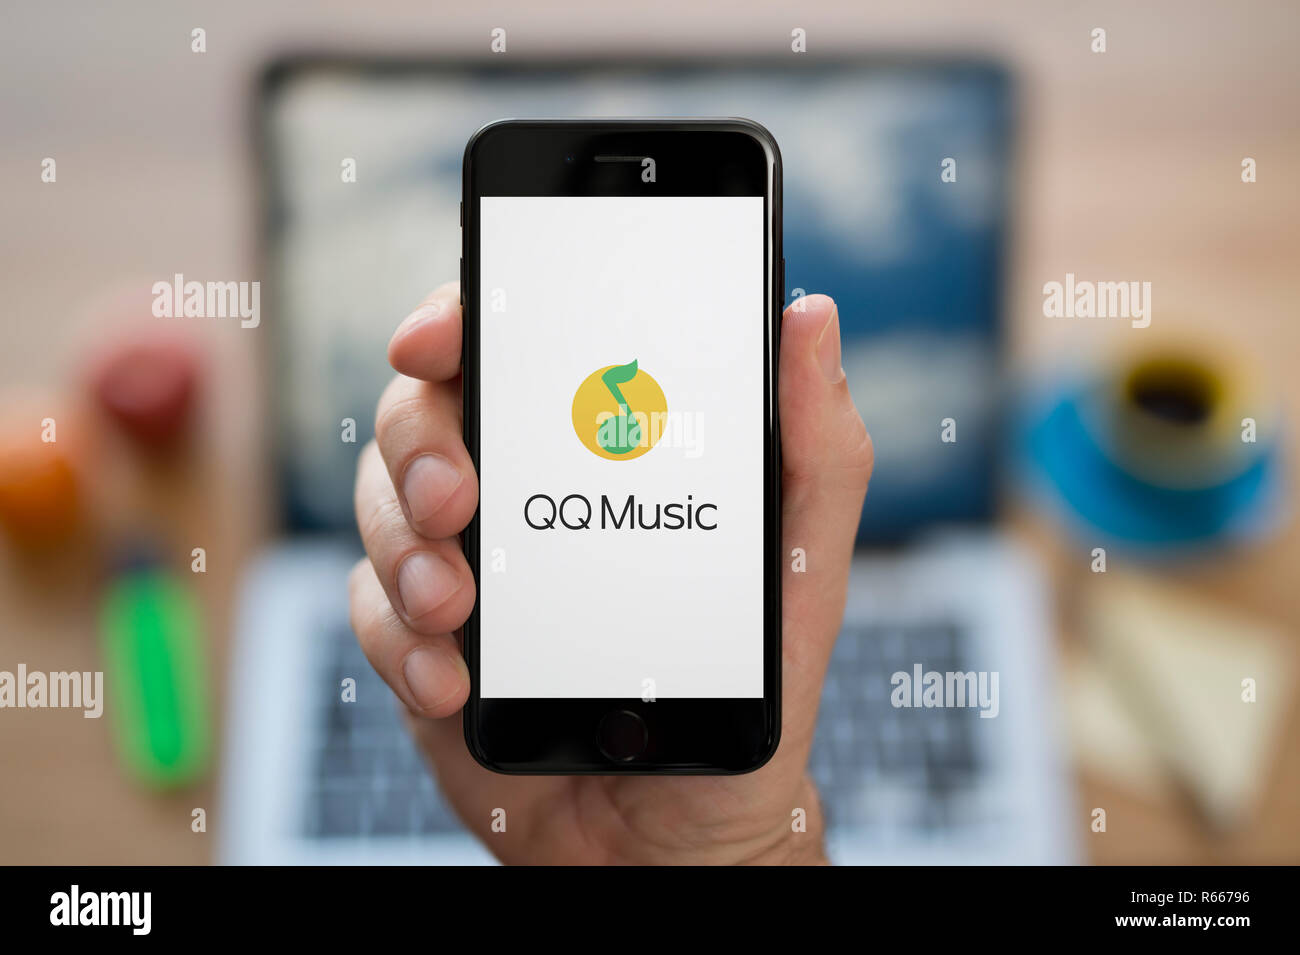 Un uomo guarda al suo iPhone che visualizza il QQ logo musicale, mentre se ne sta seduto alla sua scrivania per computer (solo uso editoriale). Foto Stock